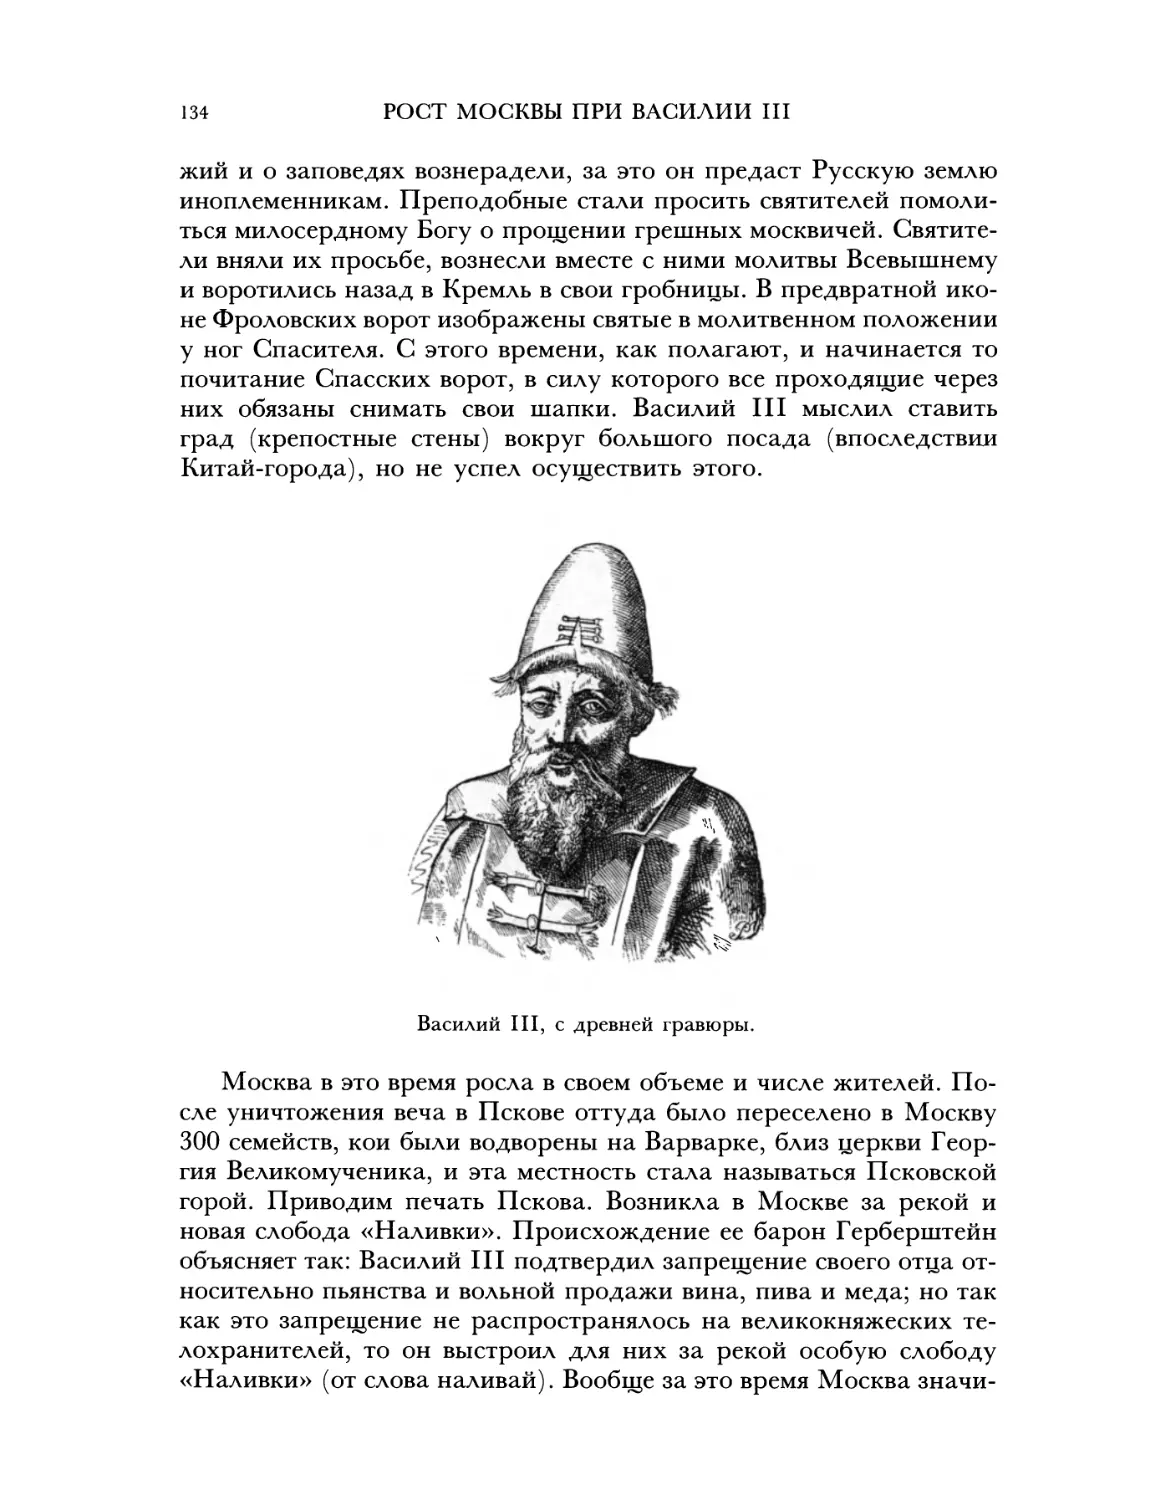 Рост Москвы при Василии III